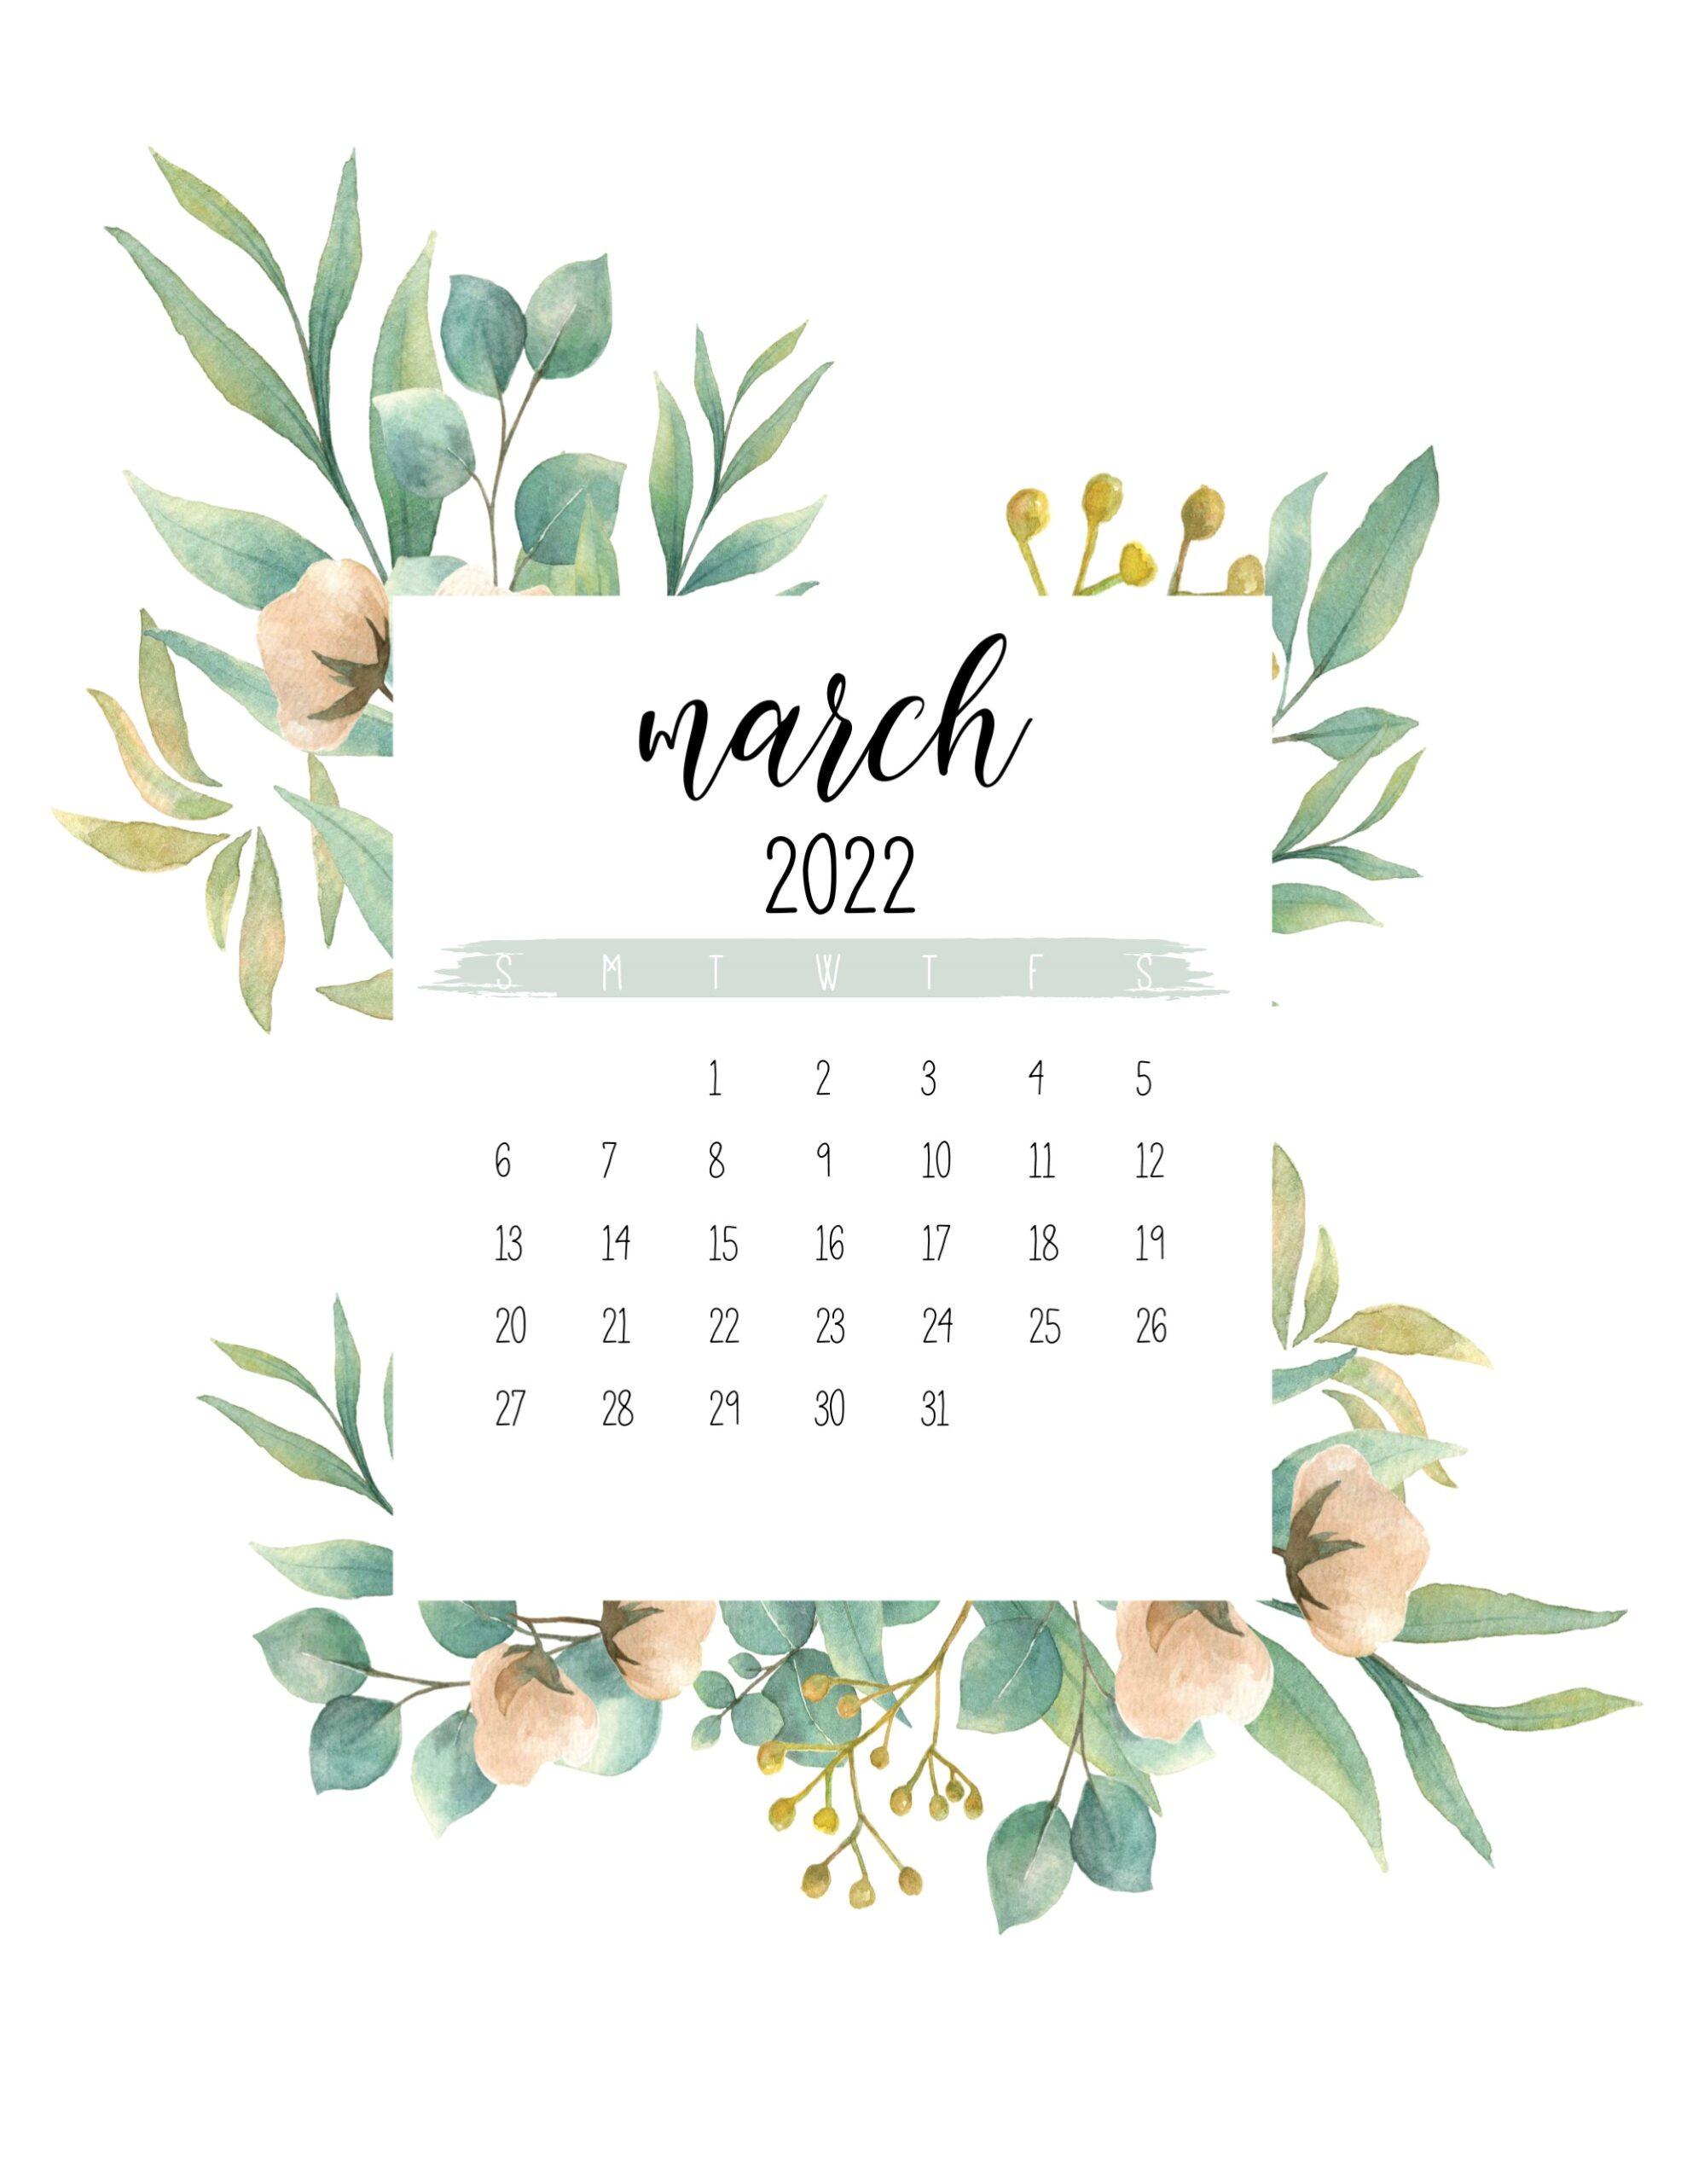 March 2022 Wallpaper Calendar March 2022 Calendar Wallpapers - Top Free March 2022 Calendar Backgrounds -  Wallpaperaccess